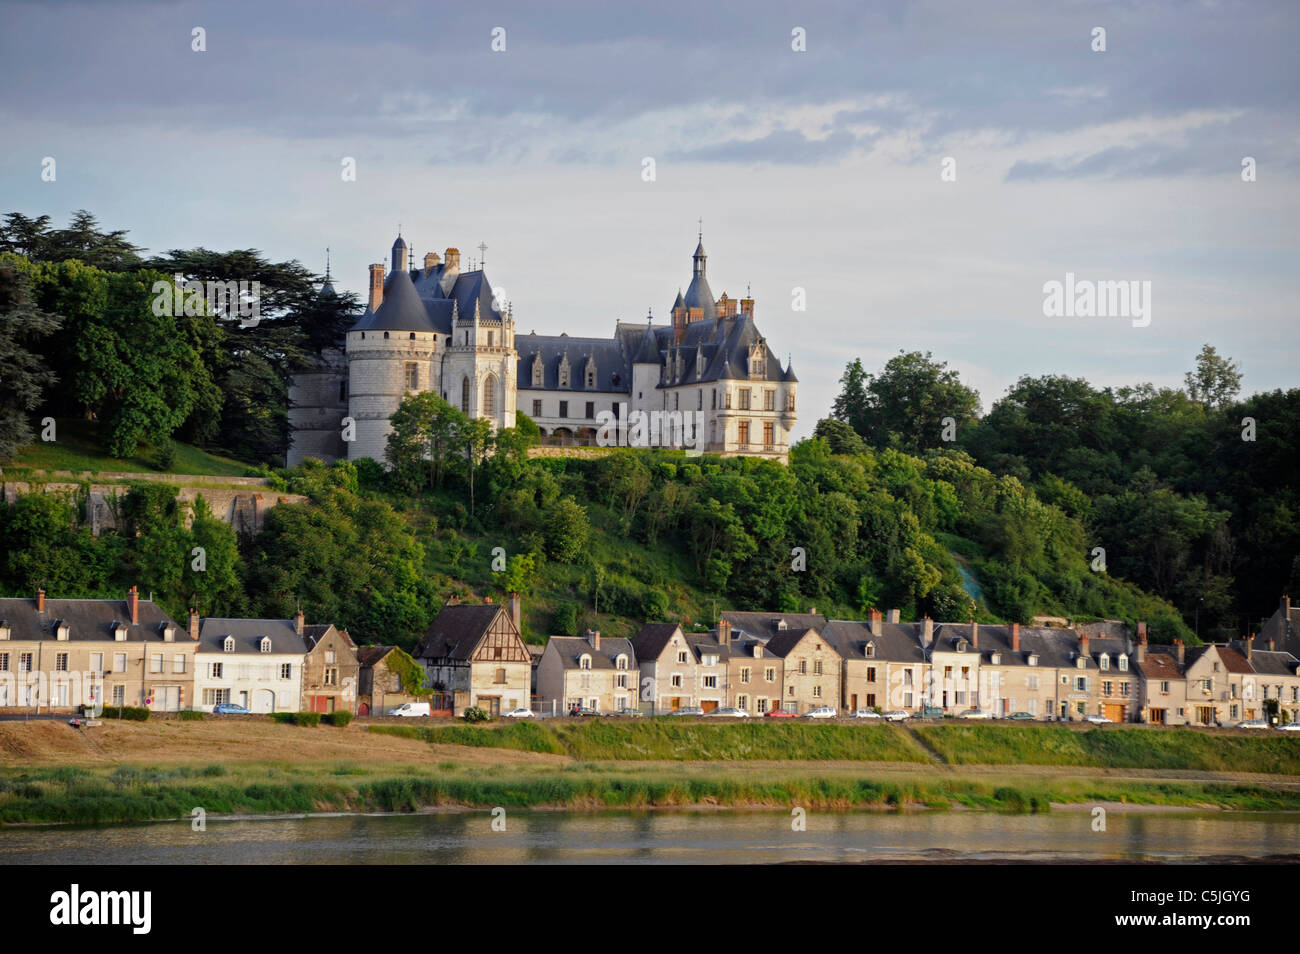 Chaumont castle,Chaumont-sur-Loire, Loire valley UNESCO world heritage, Loir-et-Cher, Touraine,France, Stock Photo